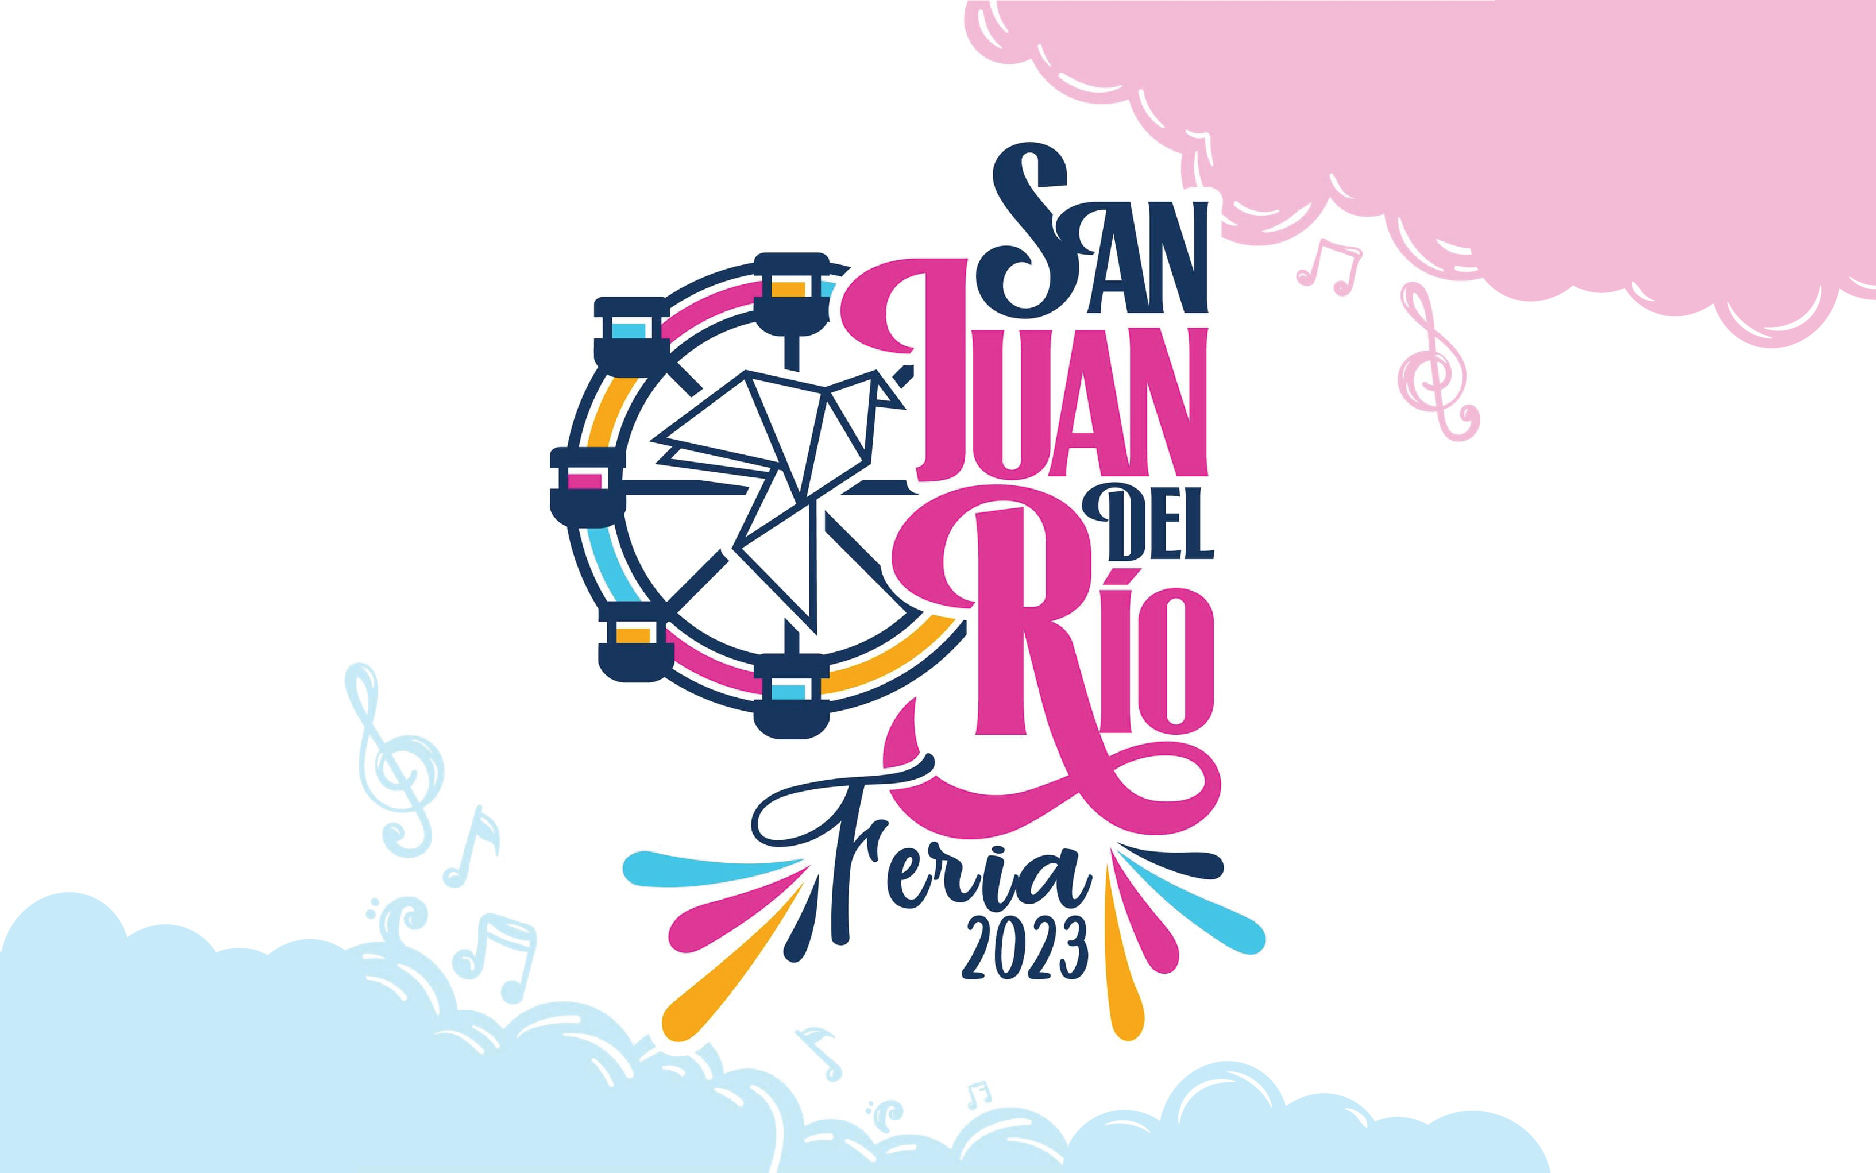 Feria San Juan del Río 2023